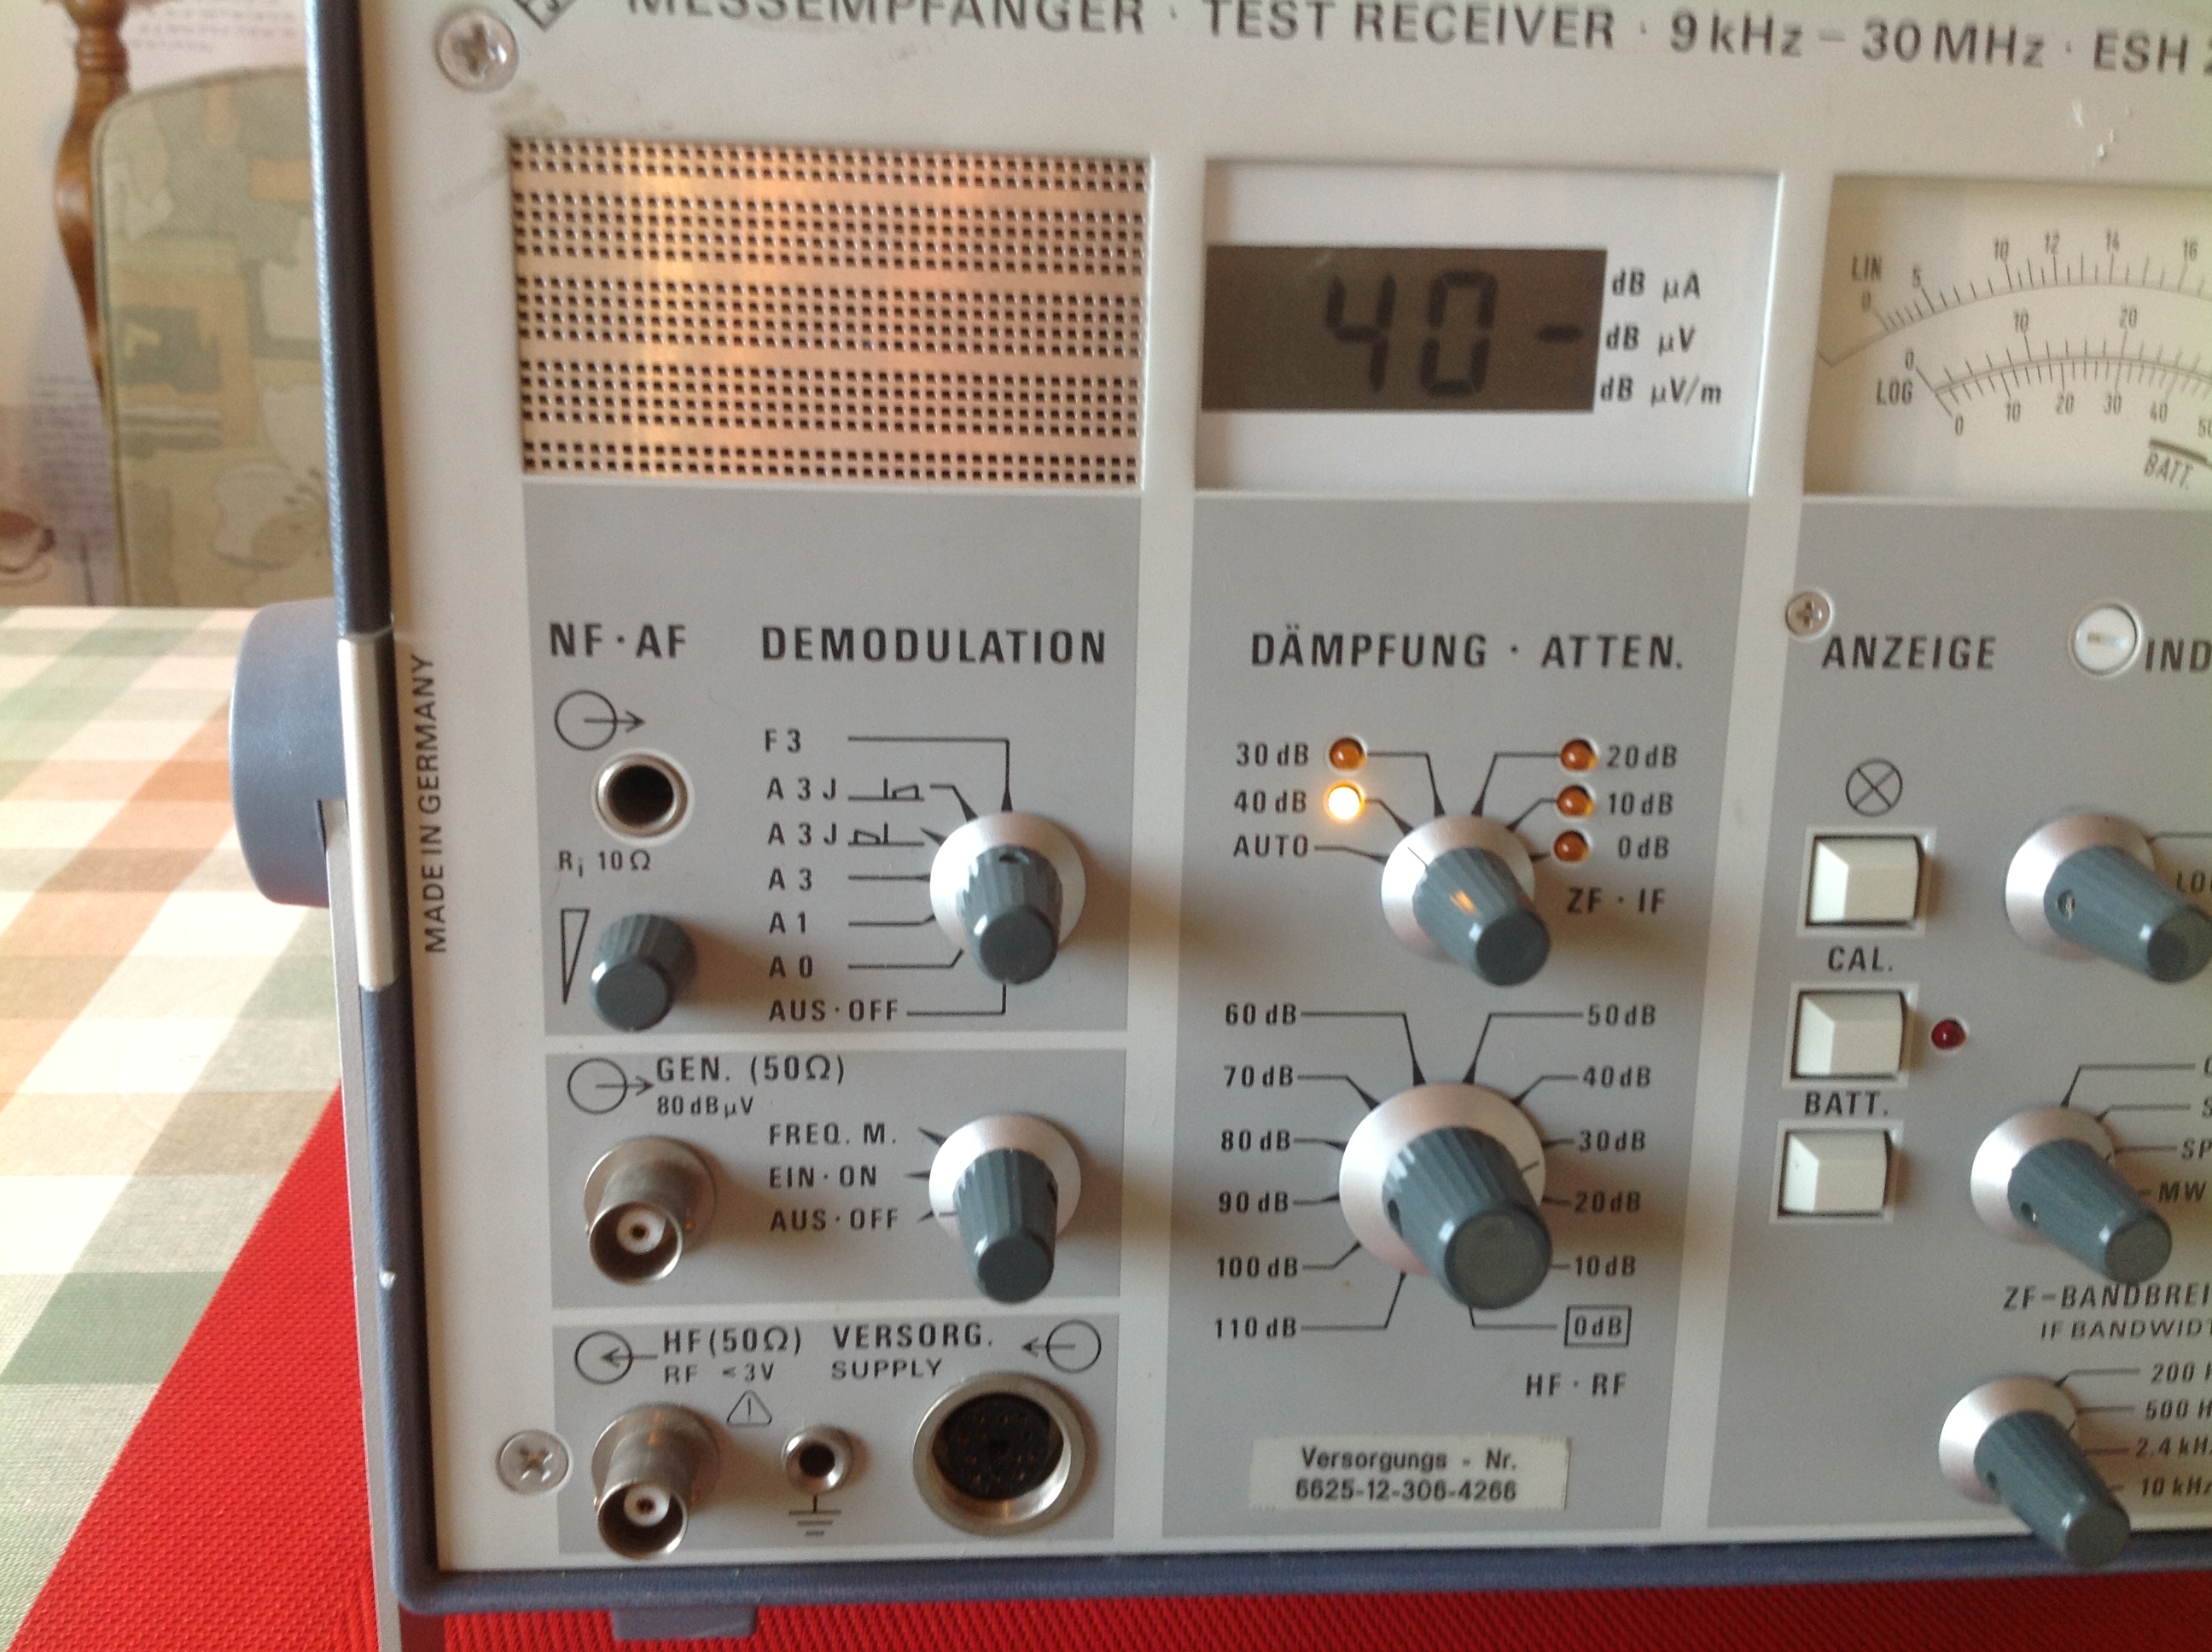 Rohde &amp; Schwarz Messempfänger - Test Receiver 9 KHz....30 MHz ESH 2